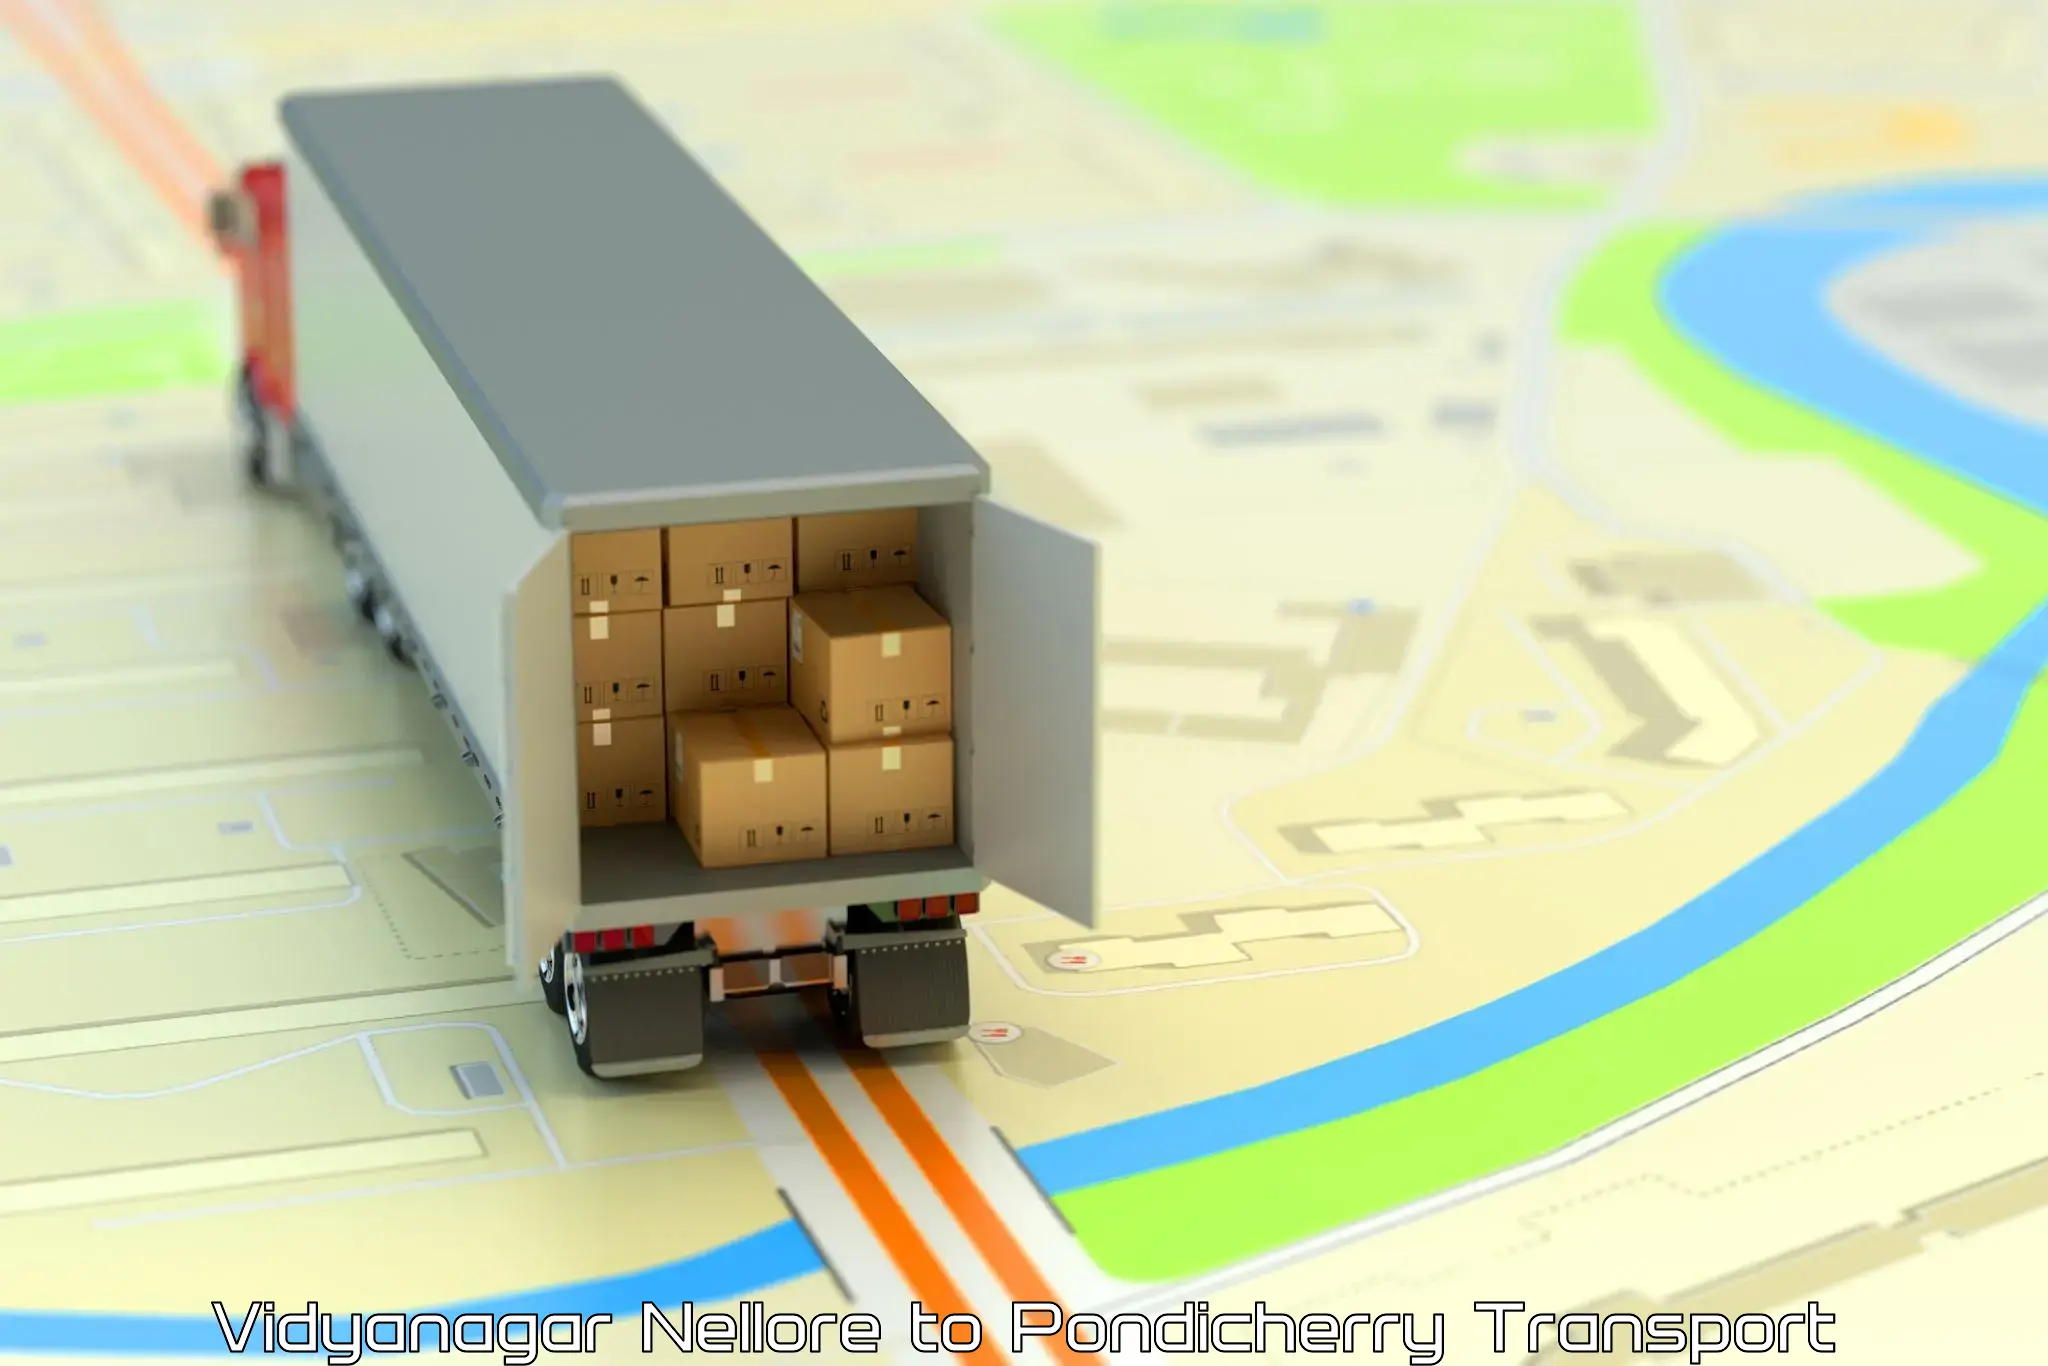 Container transport service Vidyanagar Nellore to Pondicherry University